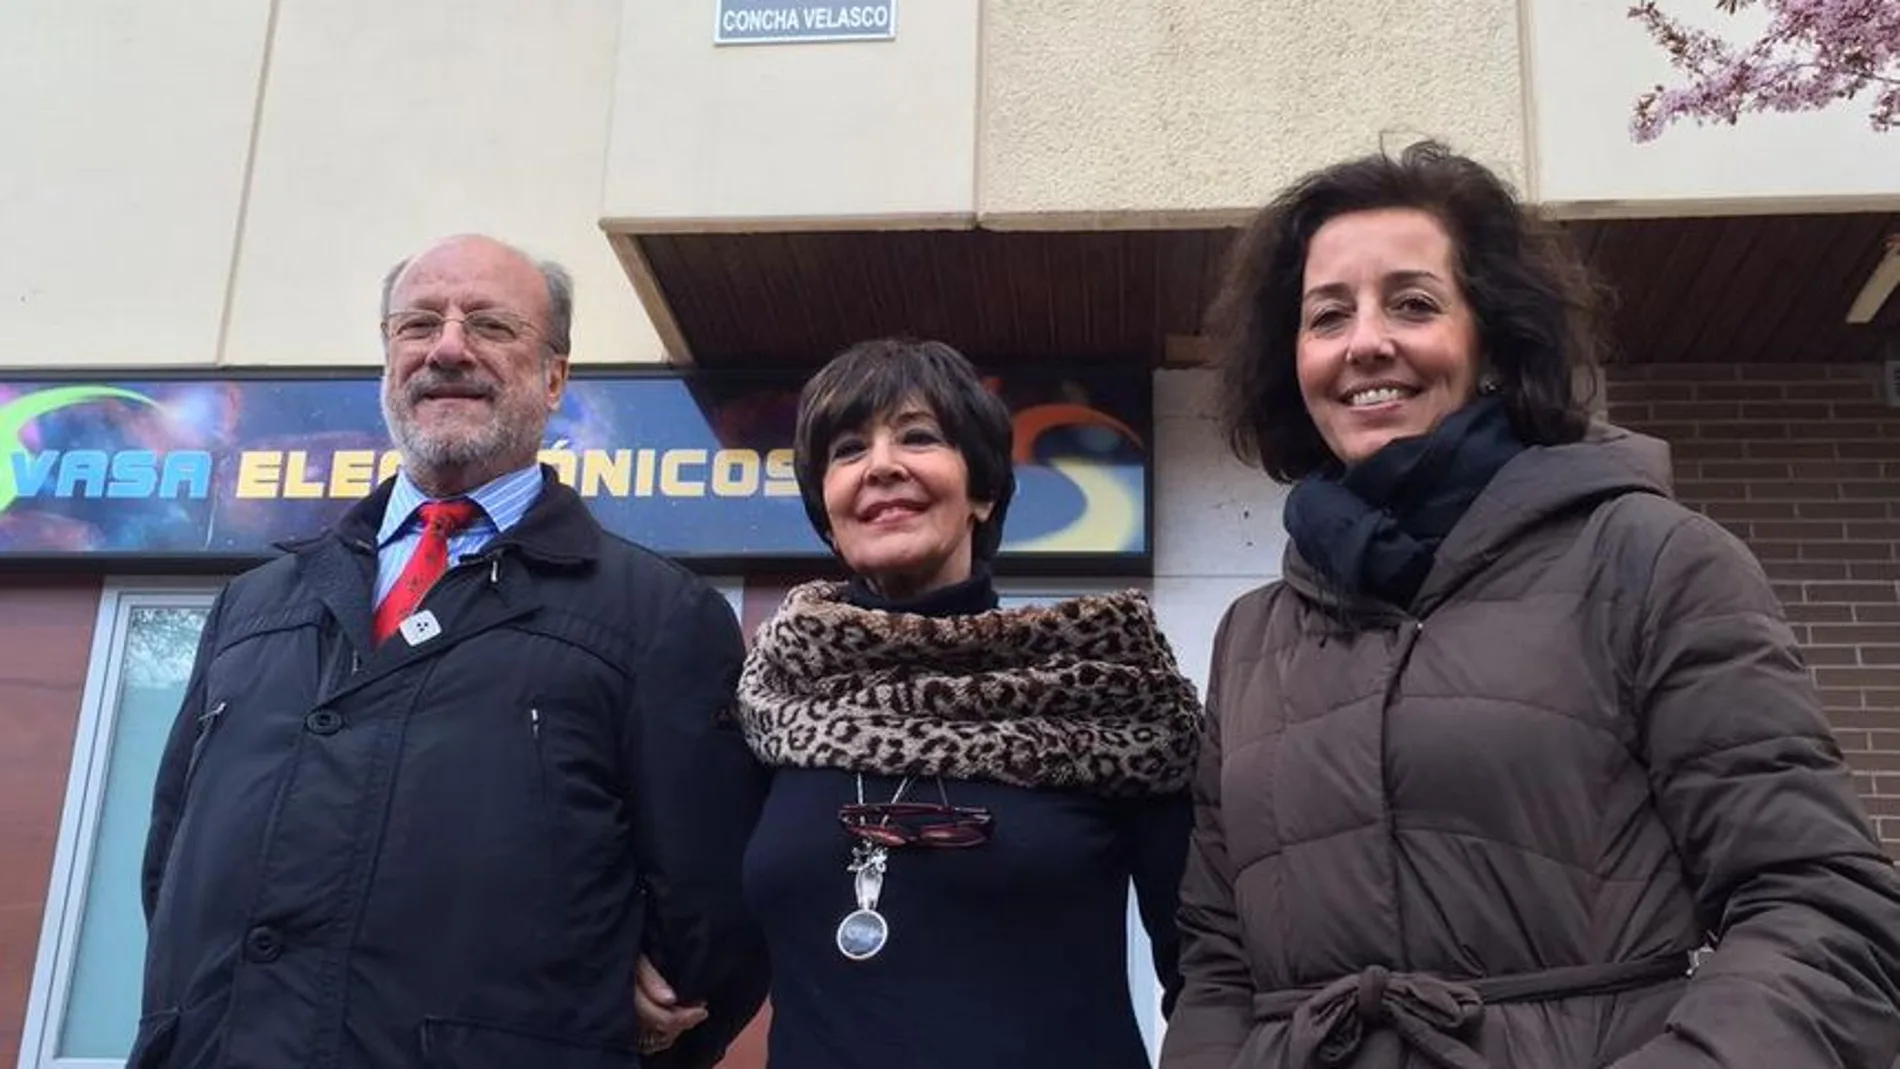 Concha Velasco, junto al alcalde de Valladolid y la concejal de cultura.